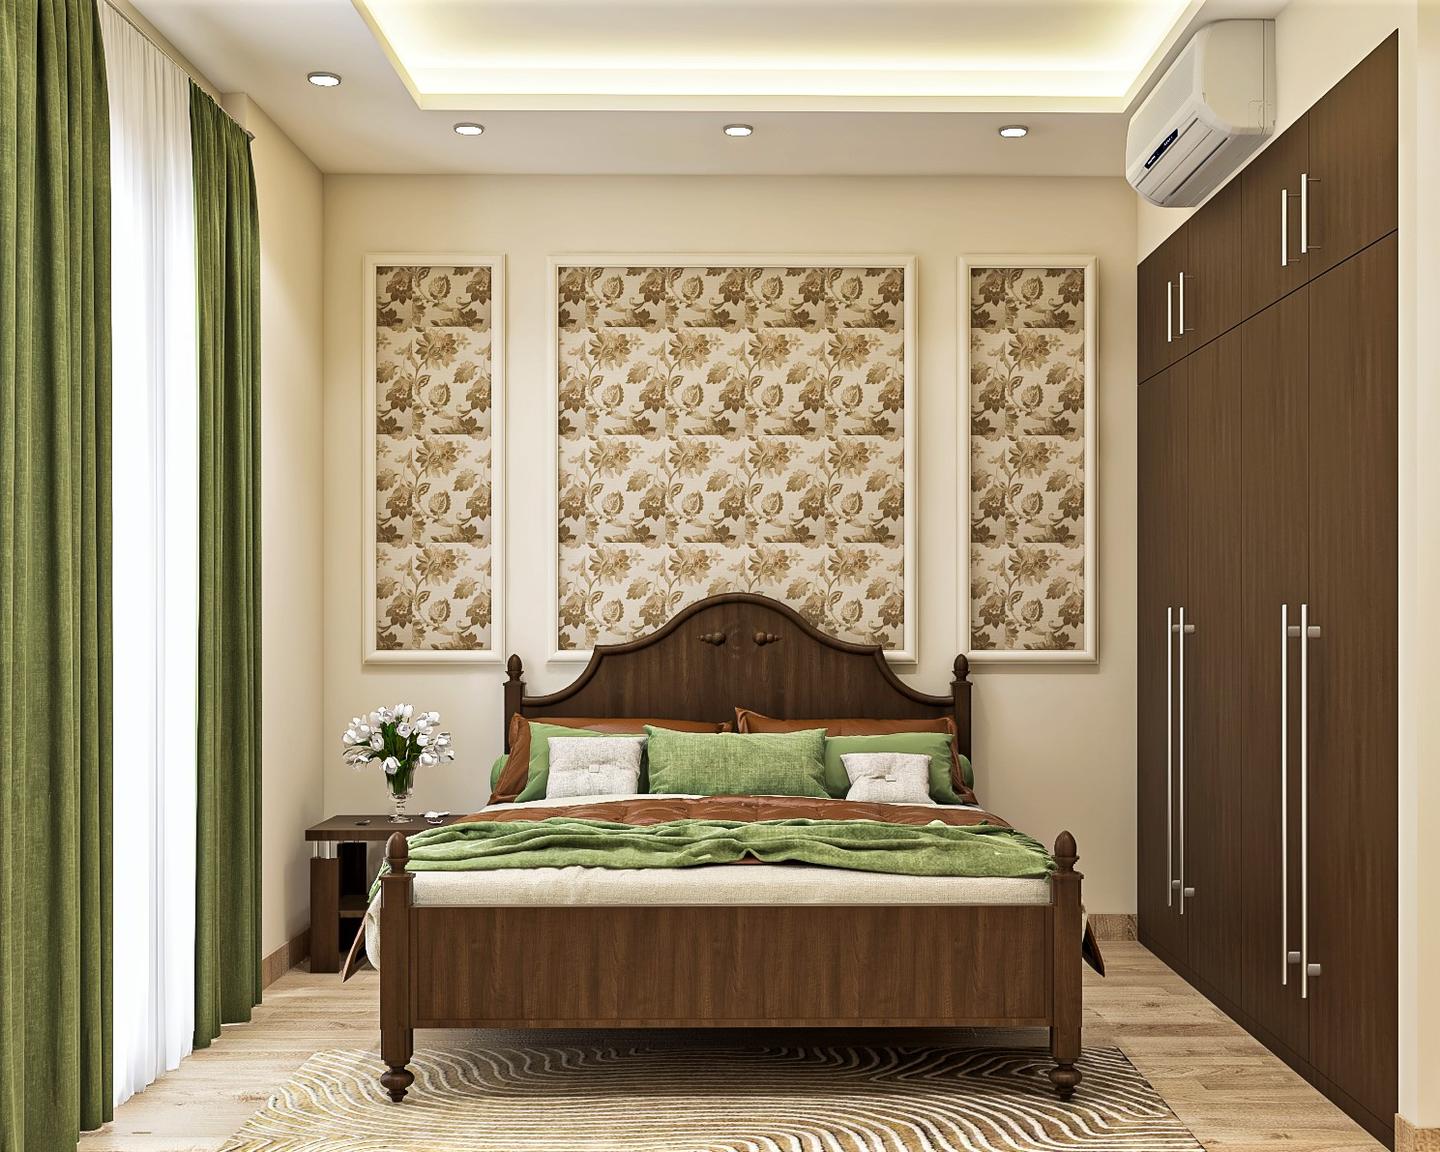 Low Maintenance Classic Guest Bedroom Design Ideas - Livspace